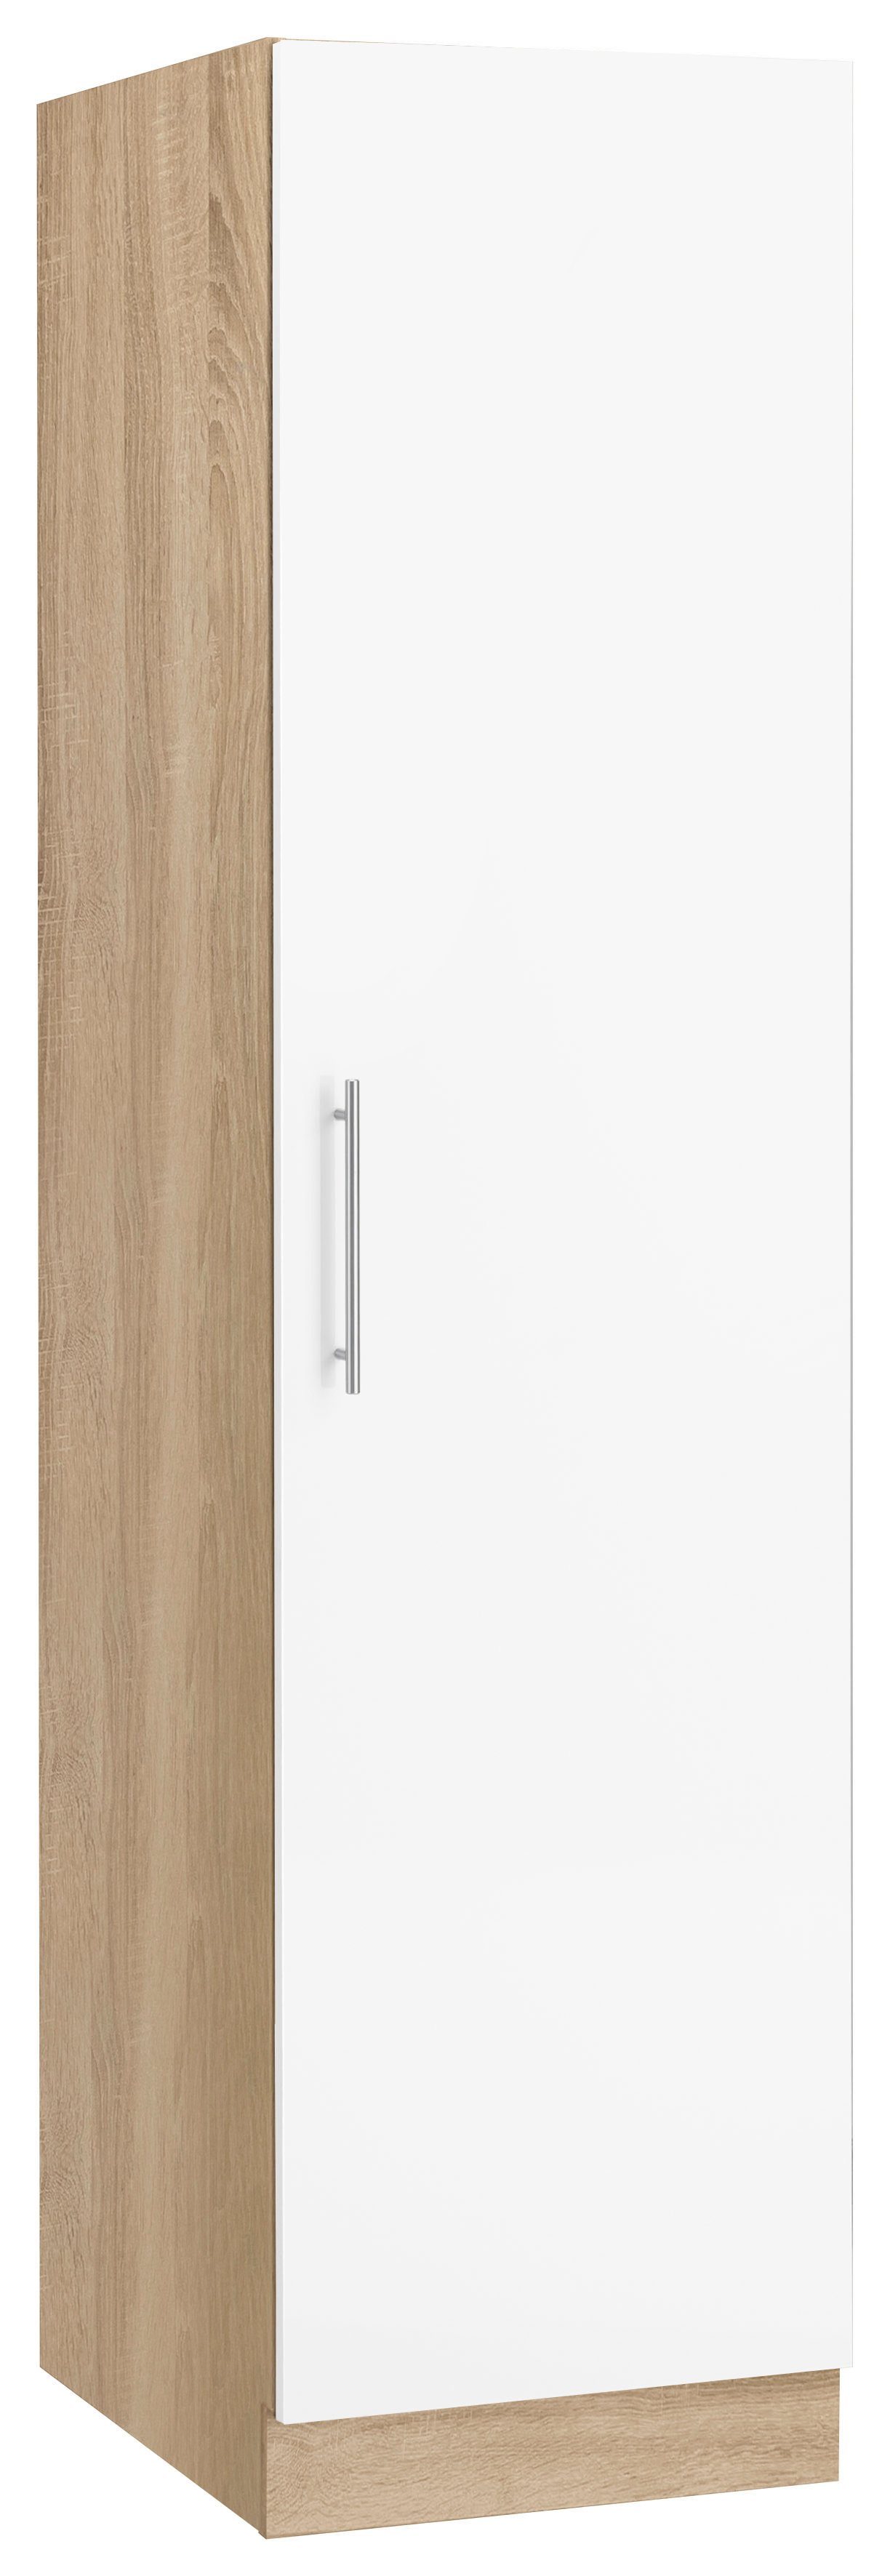 wiho Küchen Seitenschrank Cali 50 cm breit Front: Weiß matt, Korpus: Sonoma eichefarben | Eichefarben